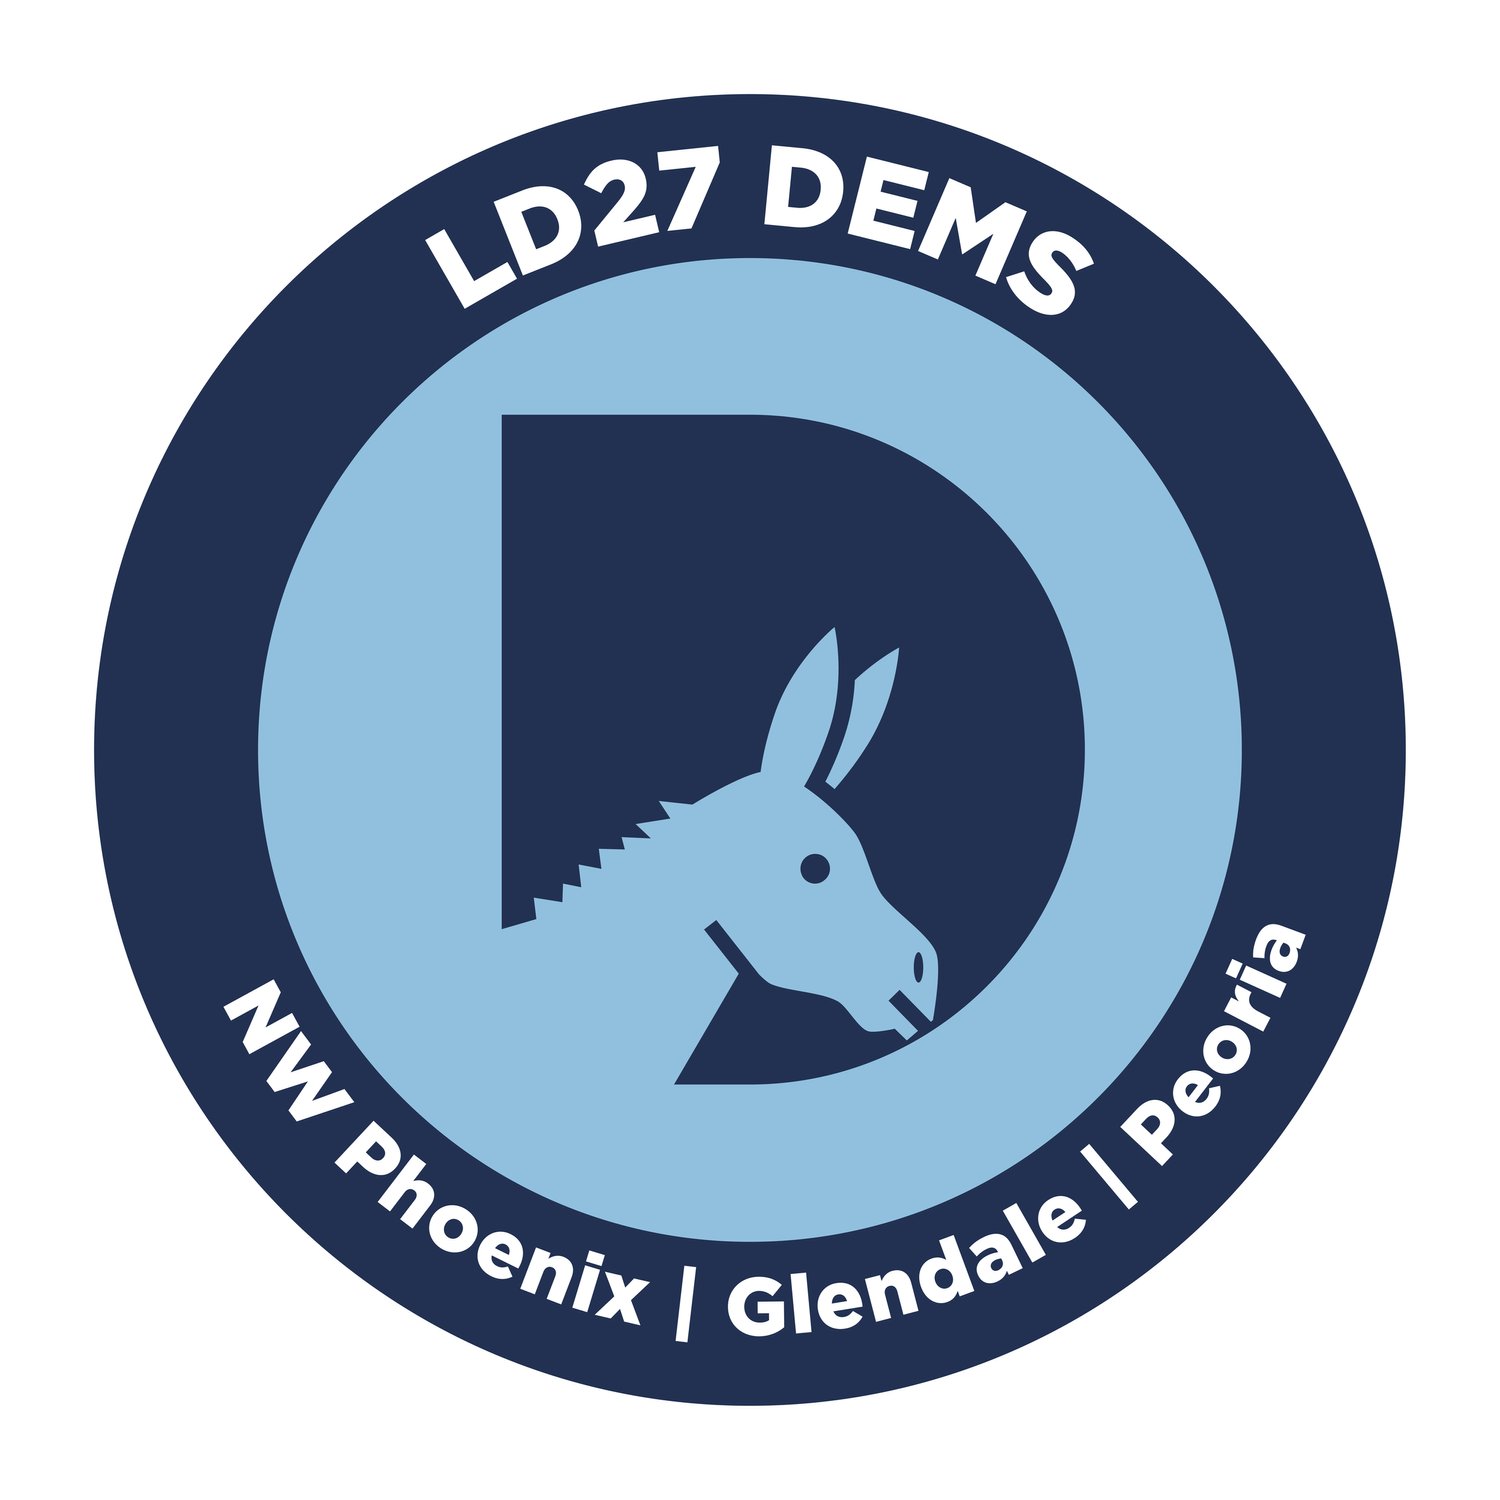 LD27 Democrats